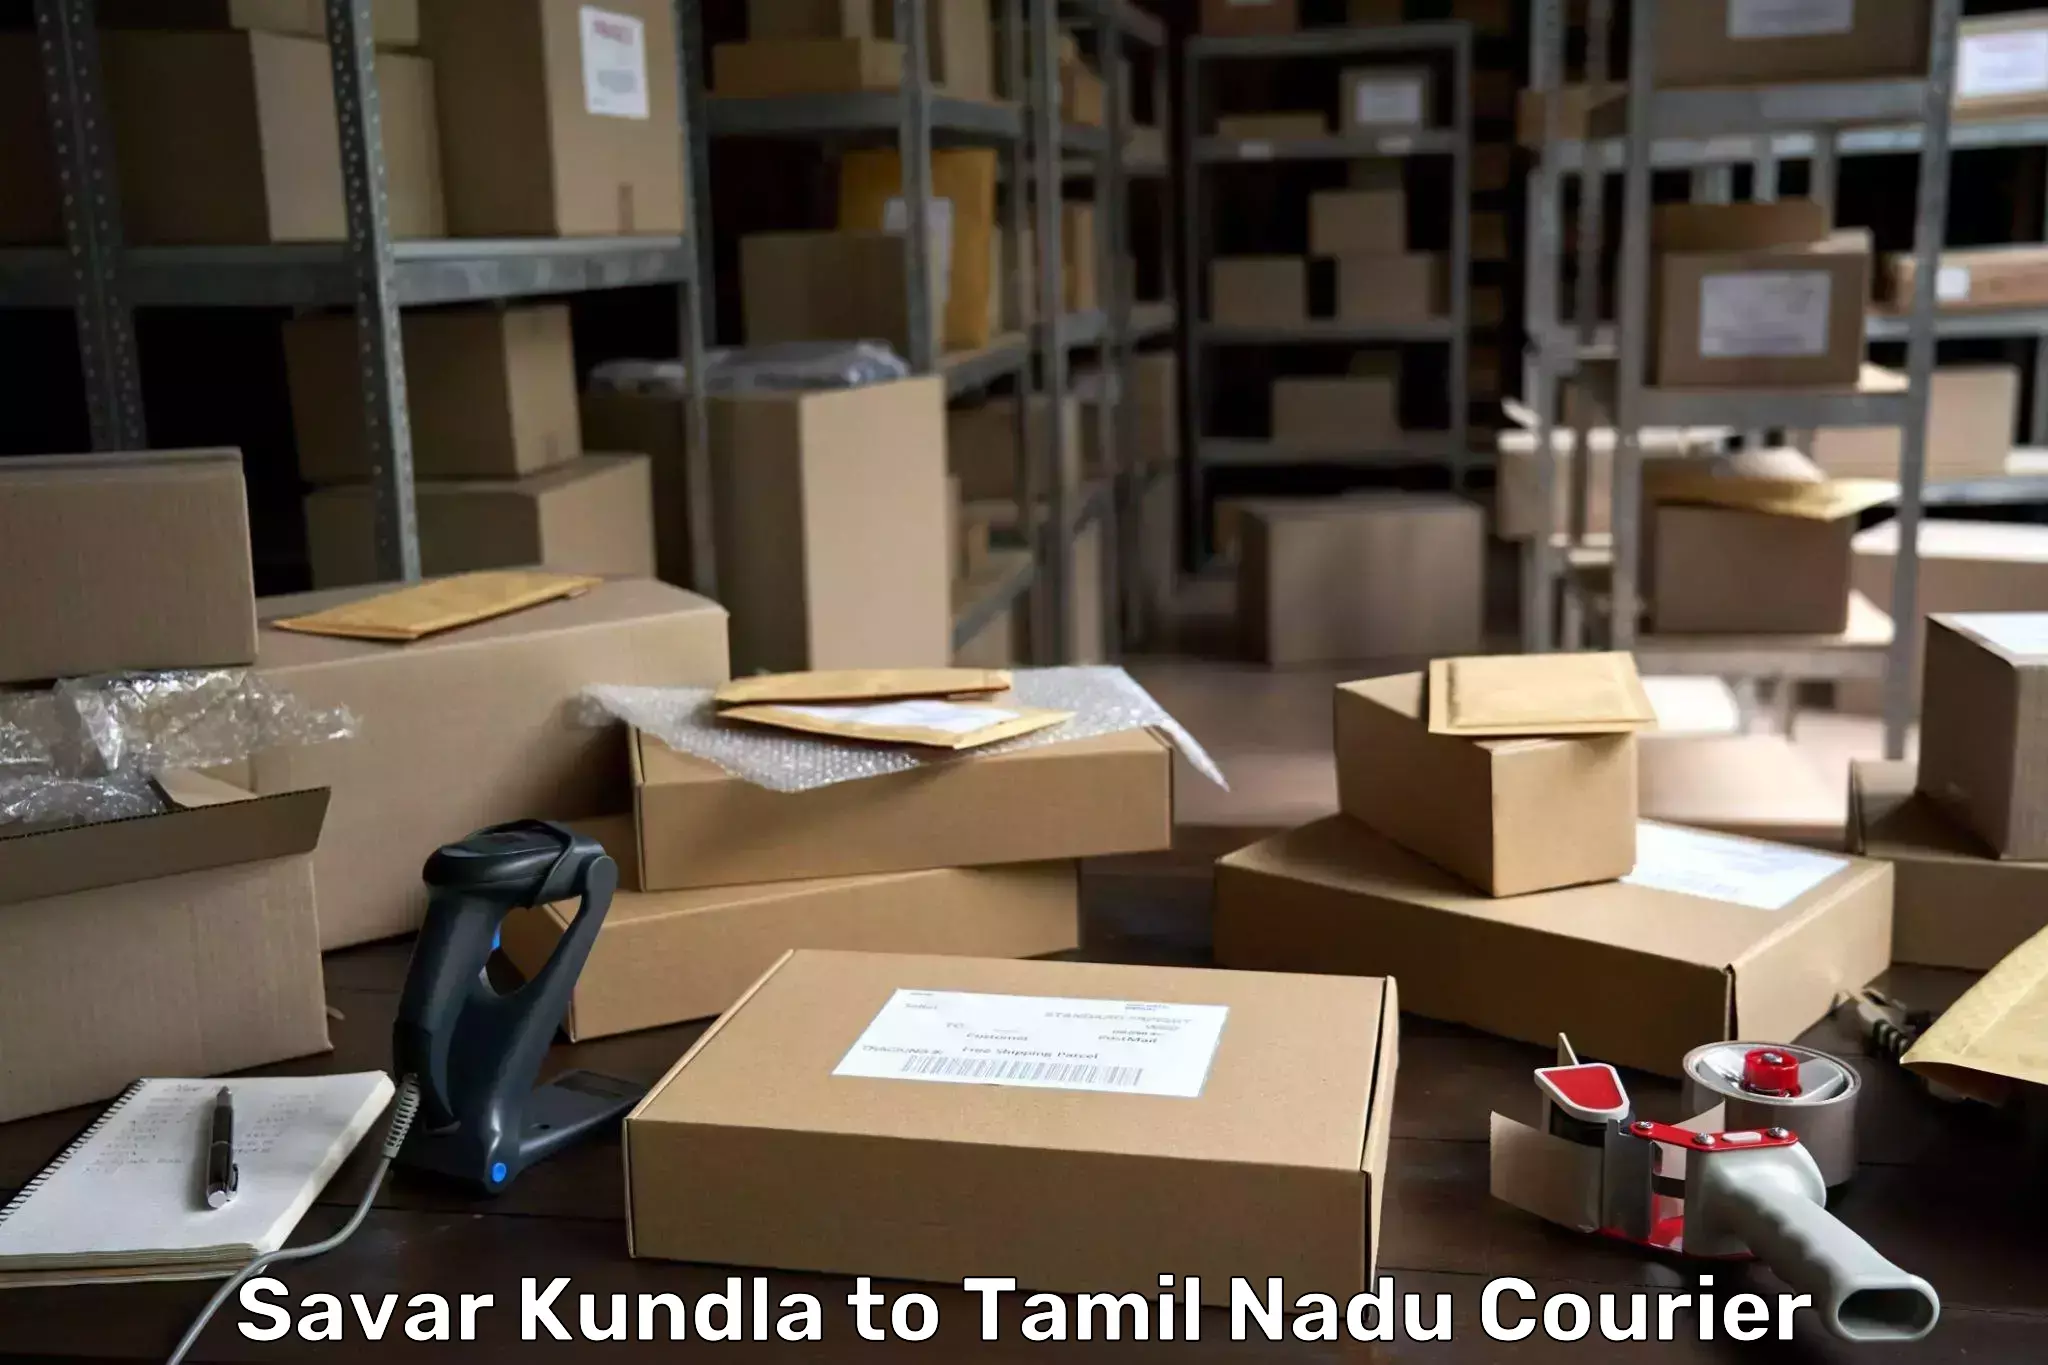 Next-day delivery options Savar Kundla to Tiruchengodu